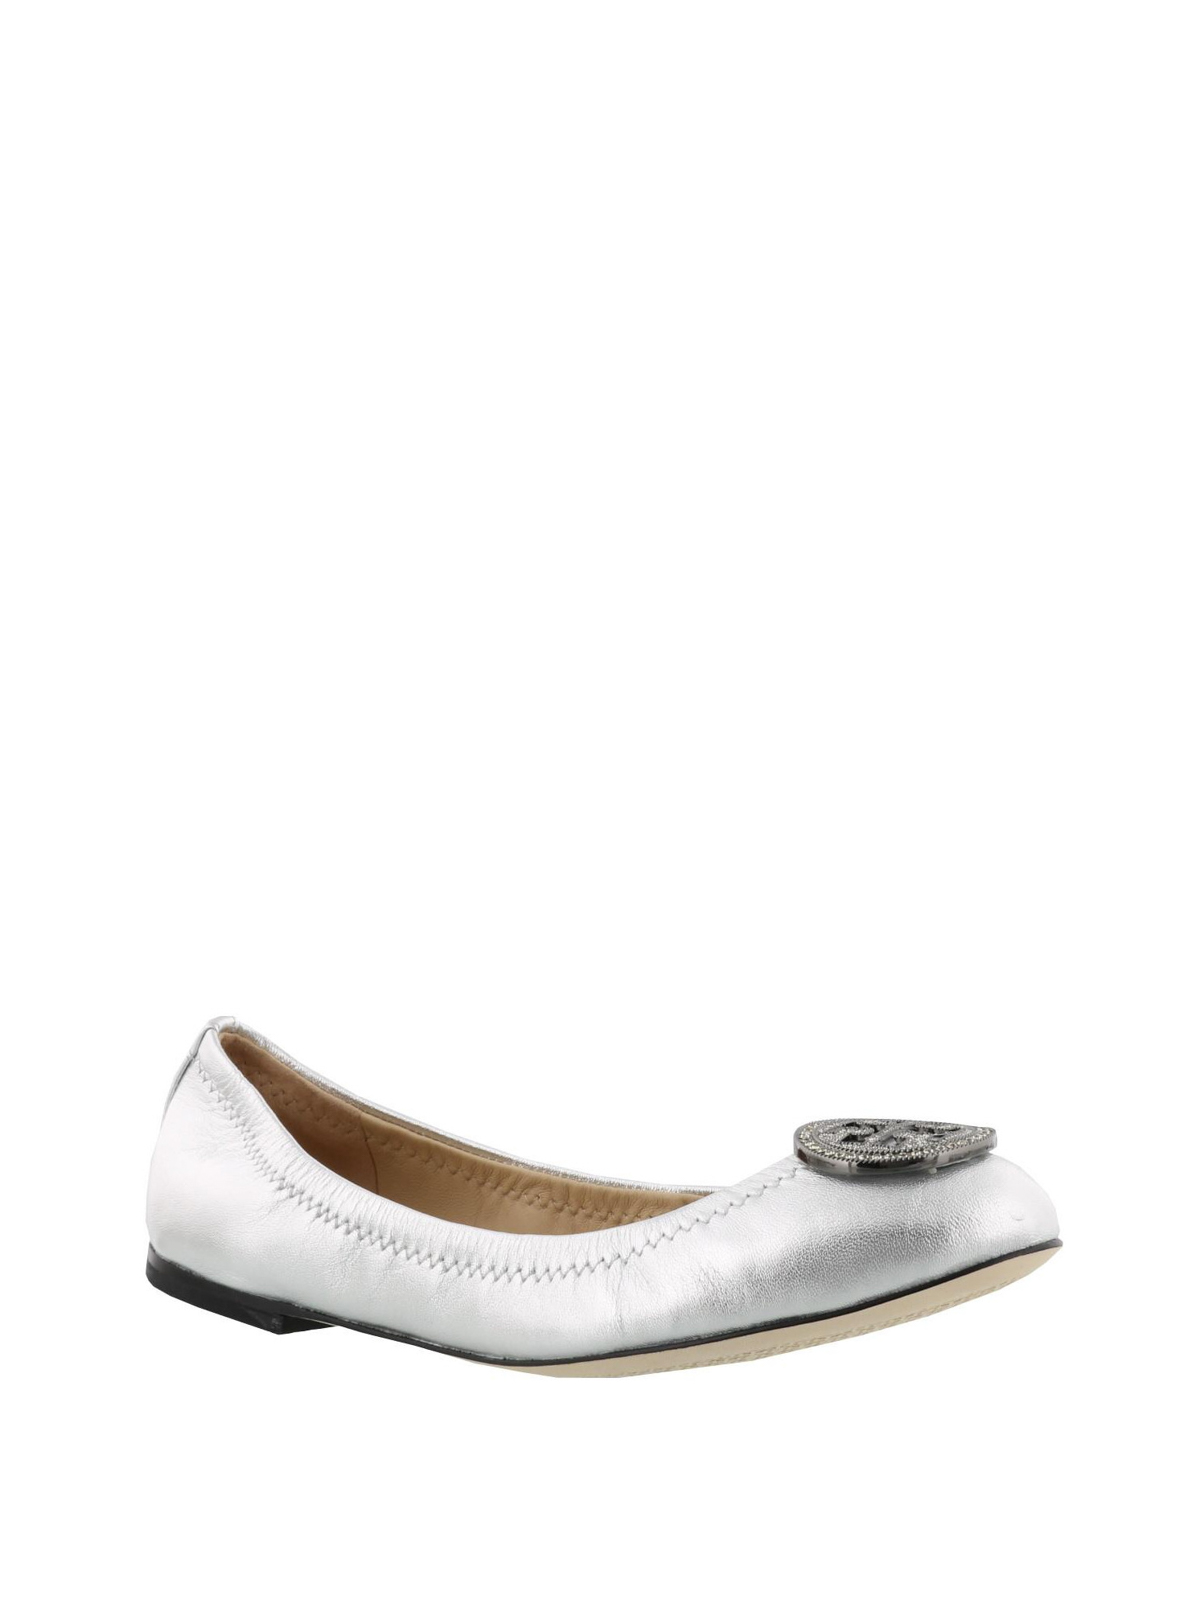 Flat shoes Tory Burch - Liana silver flat shoes - 44388040 